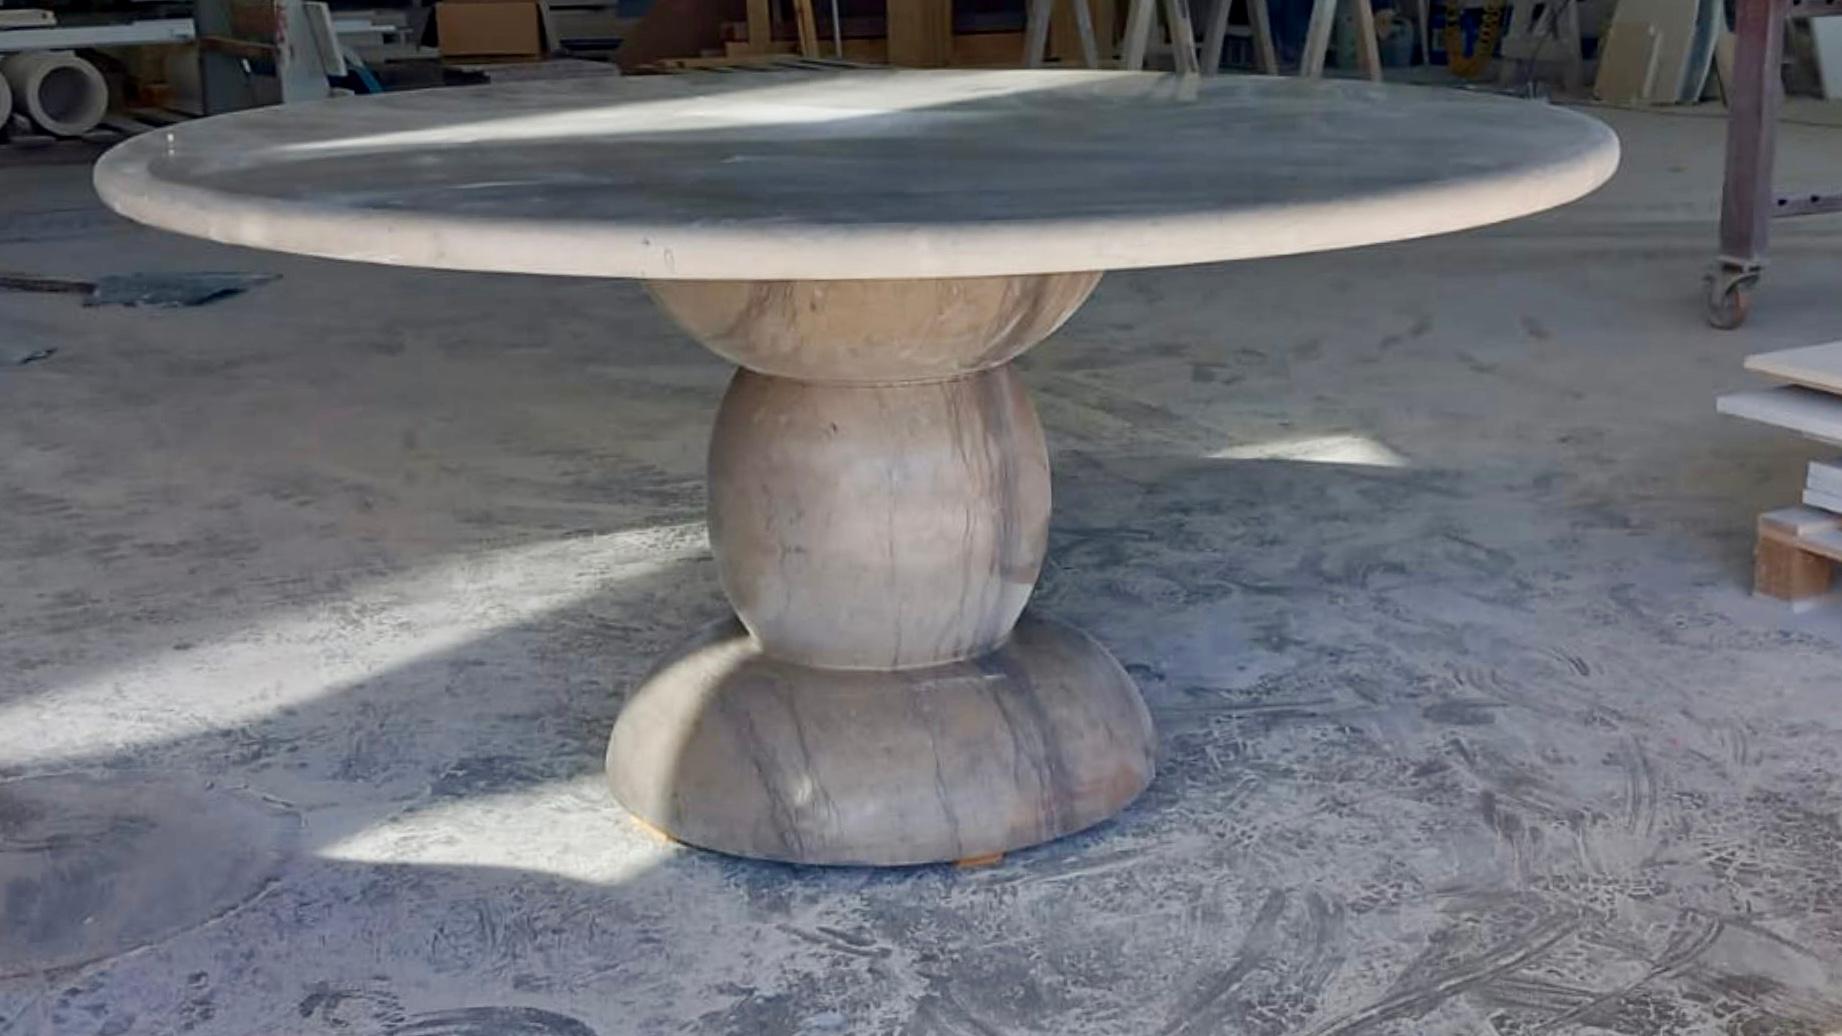 Cette table d'extérieur minimaliste est fabriquée à partir d'un seul matériau, doté d'une base sculpturale, donnant à cette table une sensation organique avec des détails subtils. 

La finition mate adoucie est durable et met en valeur la richesse